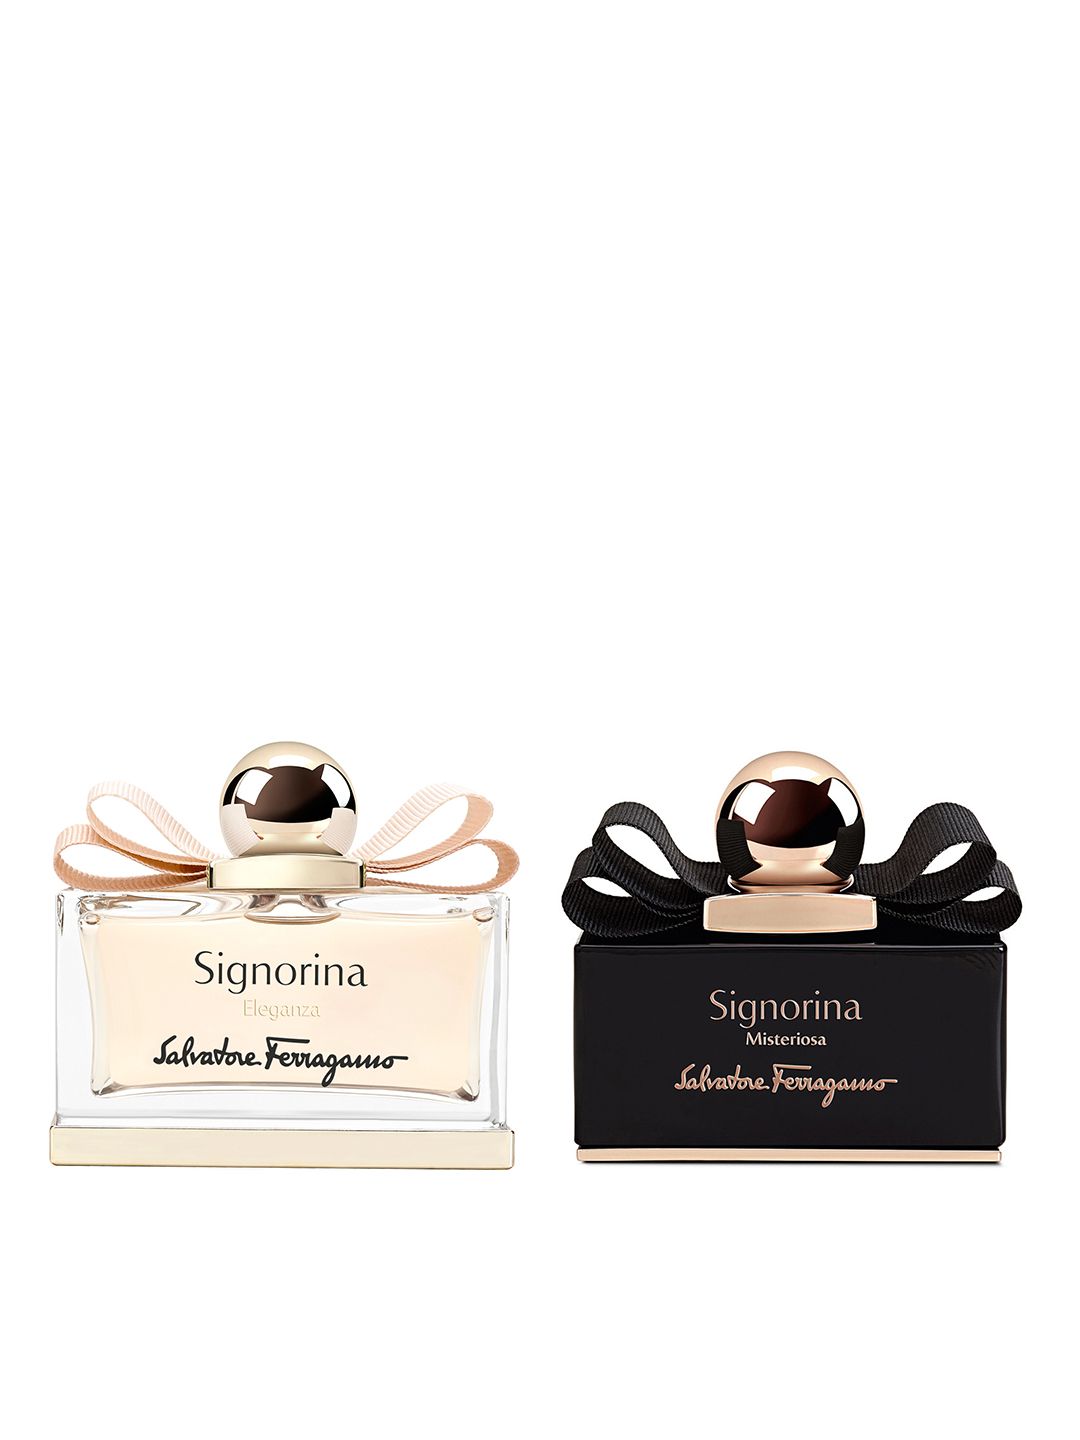 Salvatore Ferragamo Women Set of 2 Perfumes Price in India